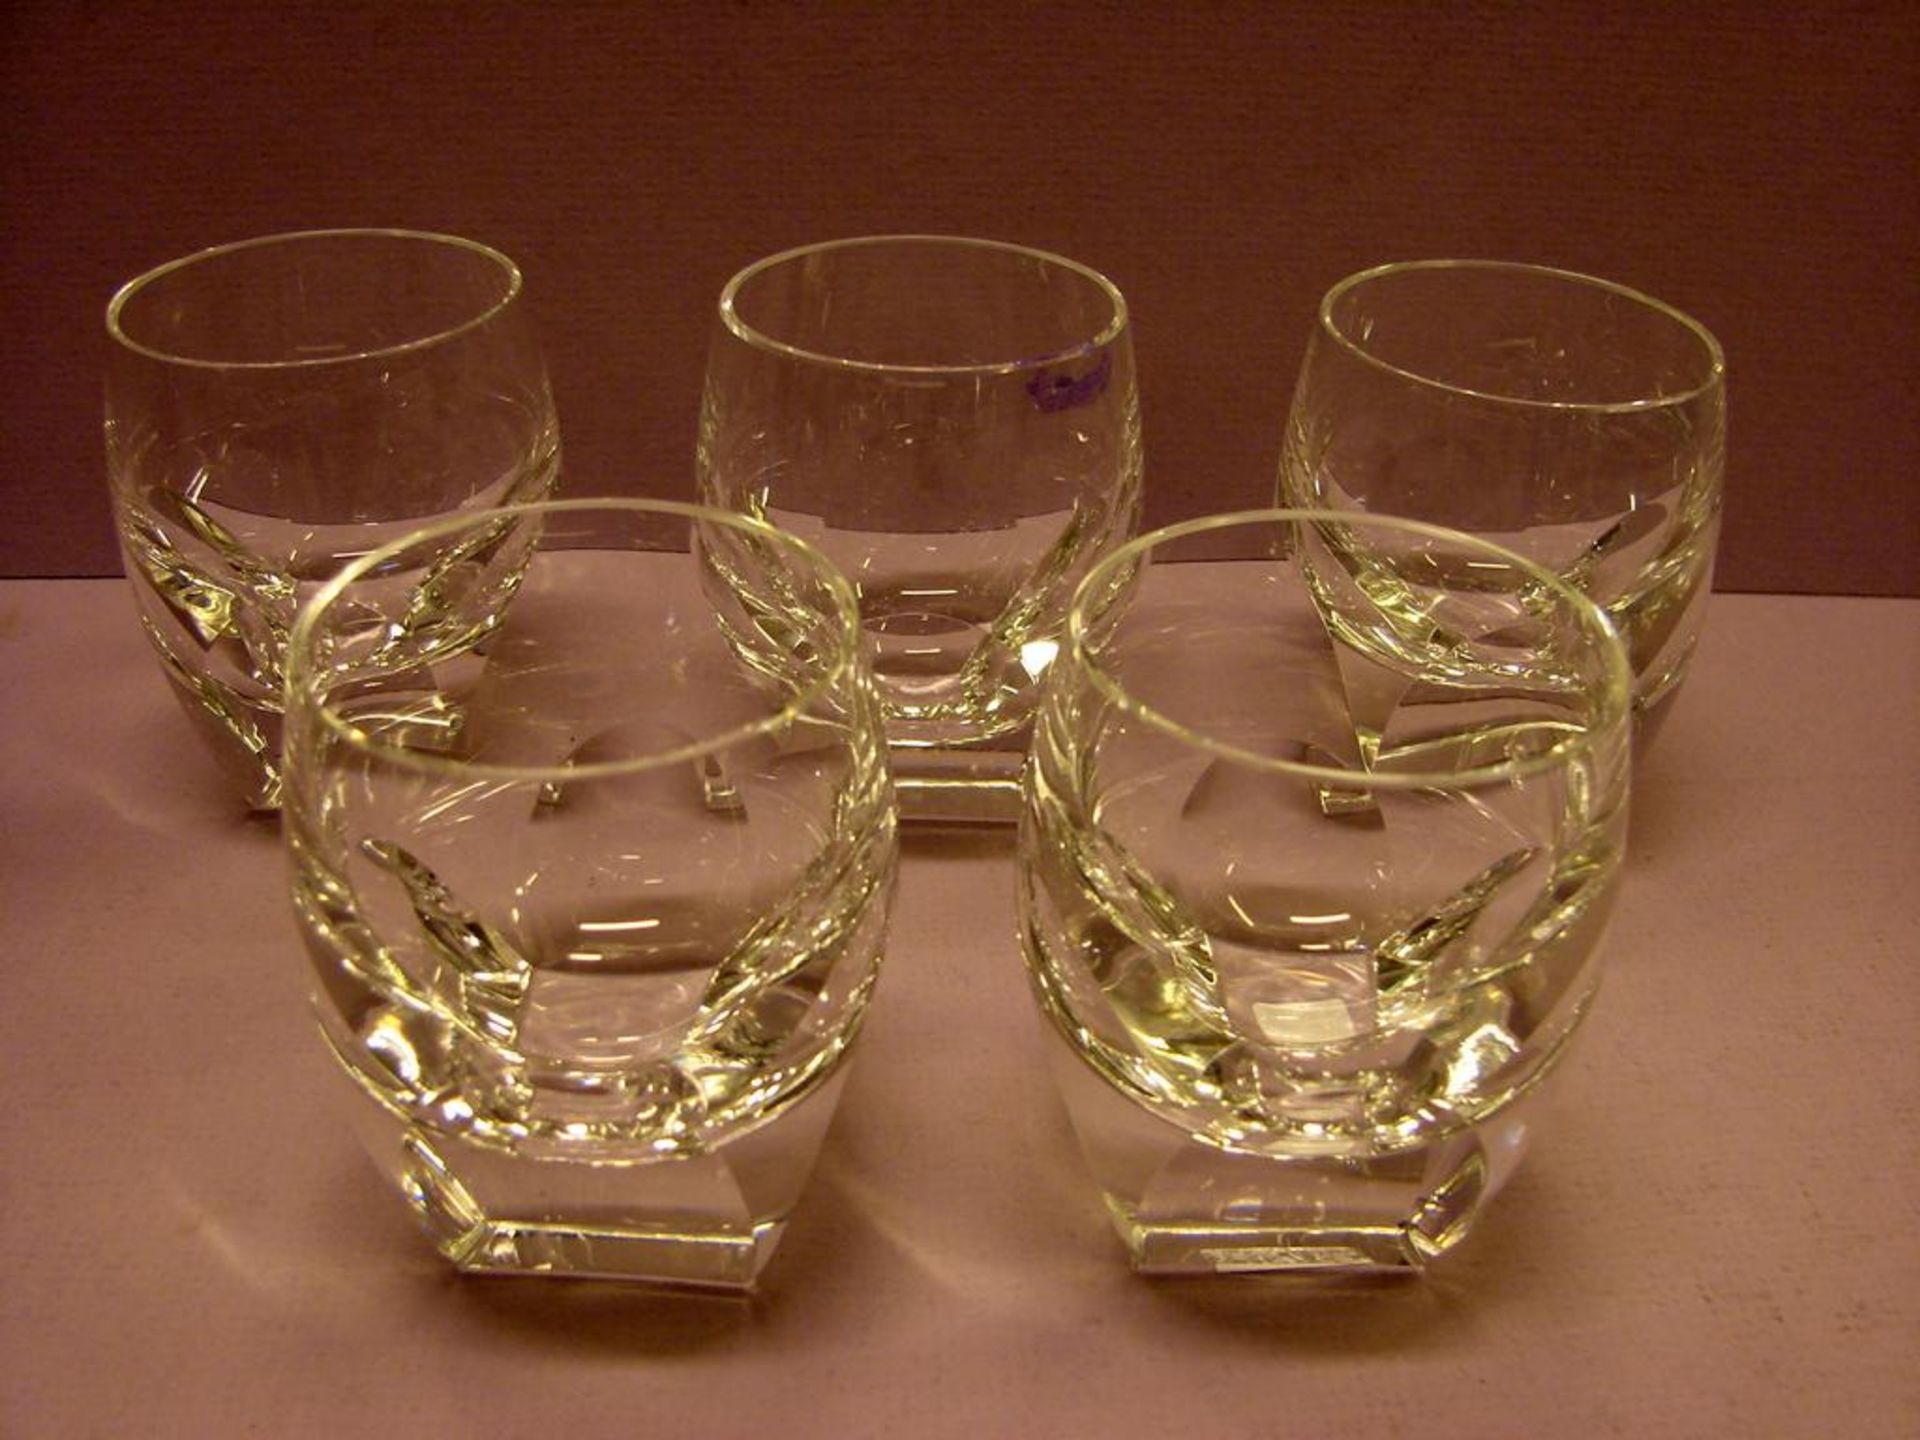 Konvolut Gläser, Modell "Bar", Moser, 5 Stk., H.ca. 7 cm, (1 mit kl. Chip)- - -22.00 % buyer's